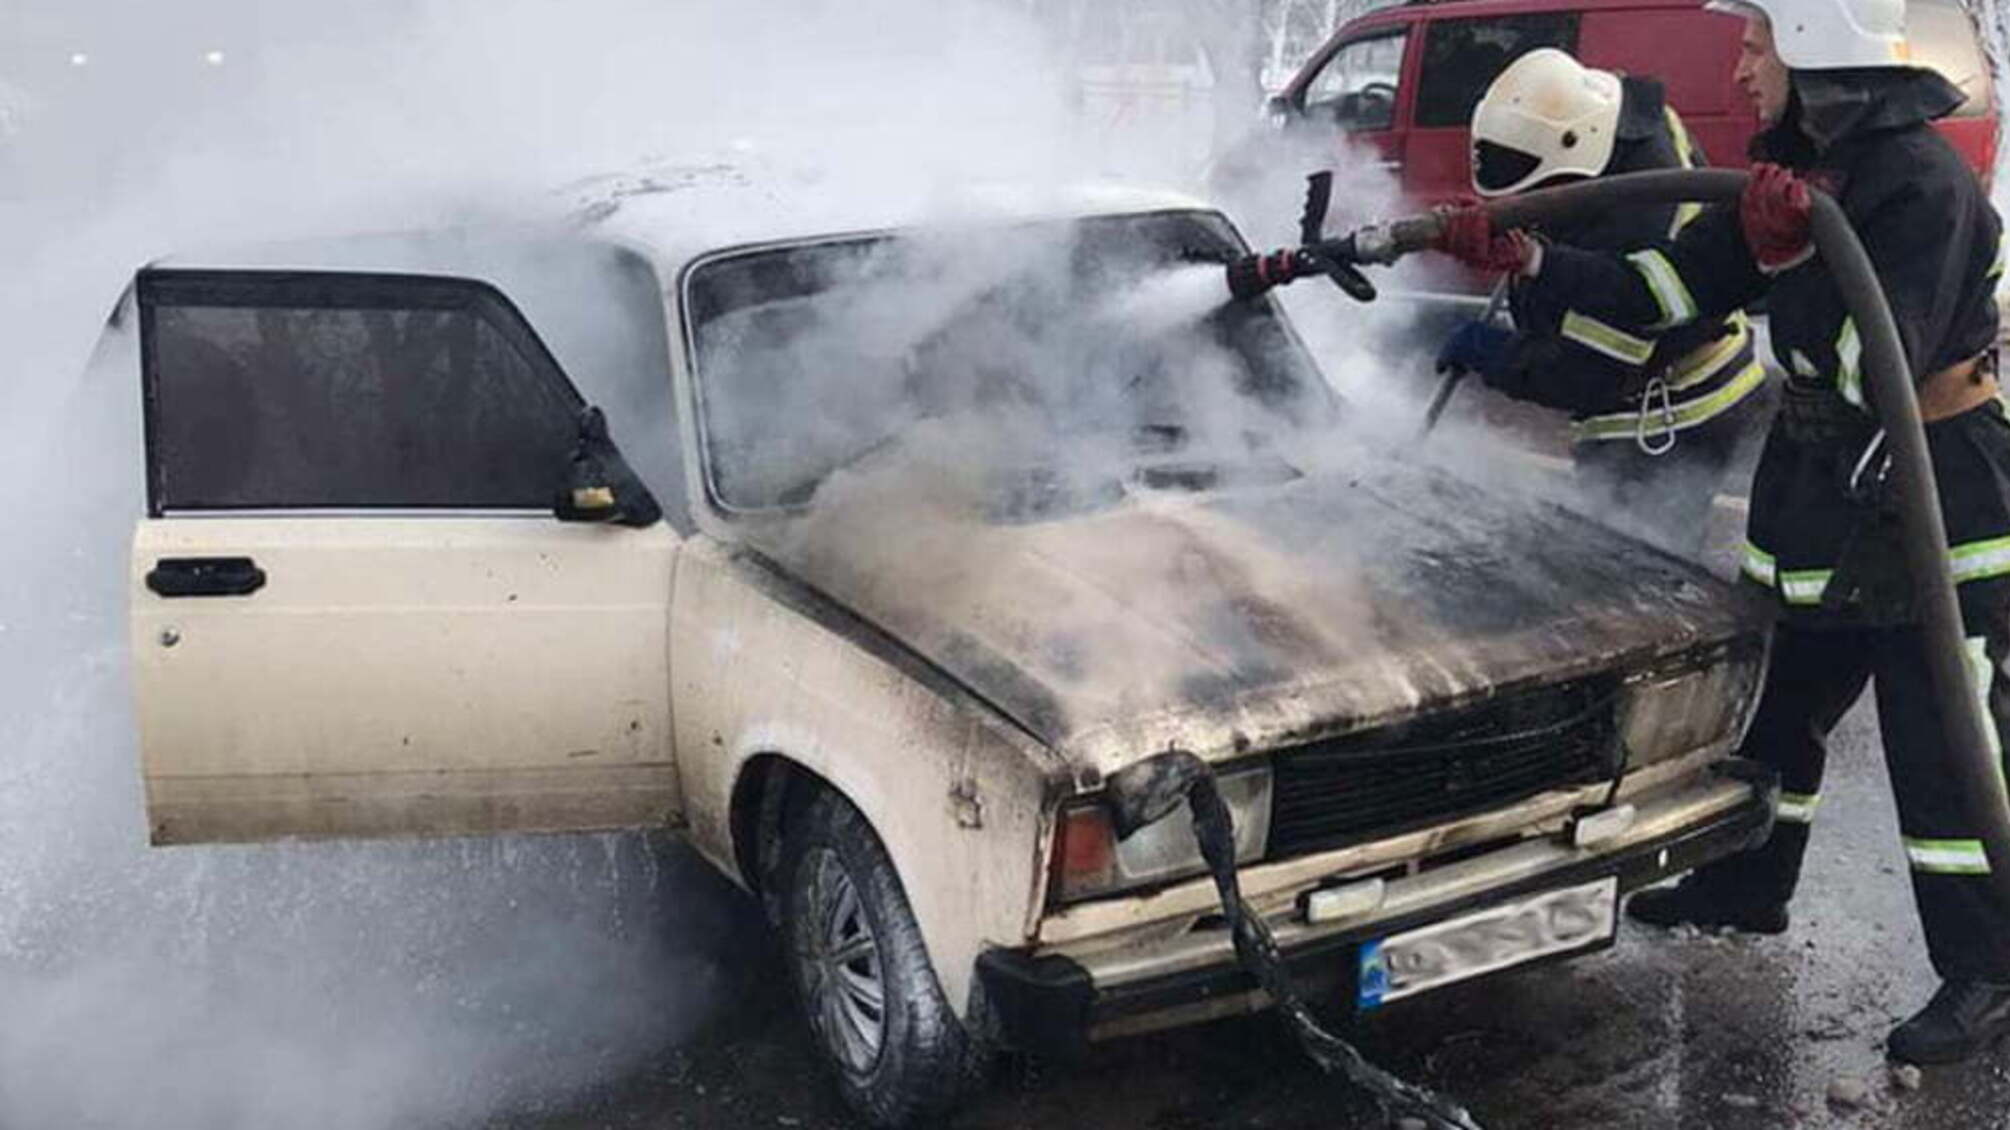 Миколаївська область: рятувальники ліквідували пожежу авто